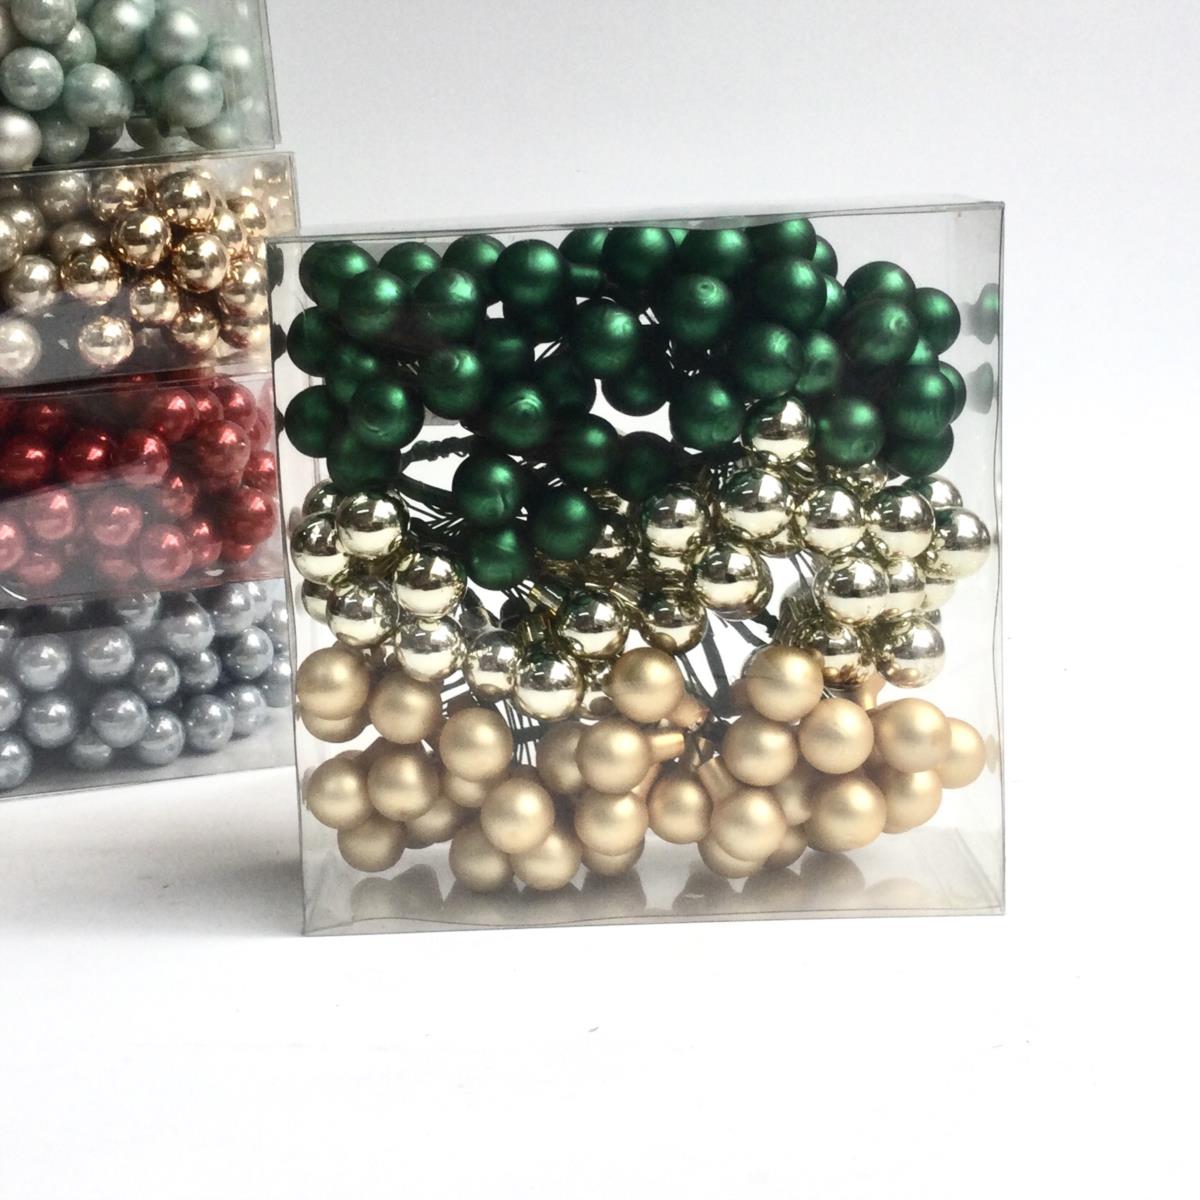 Шарики стеклянные в связках 1,5см зелено- золотистые  - упаковка 144 шт